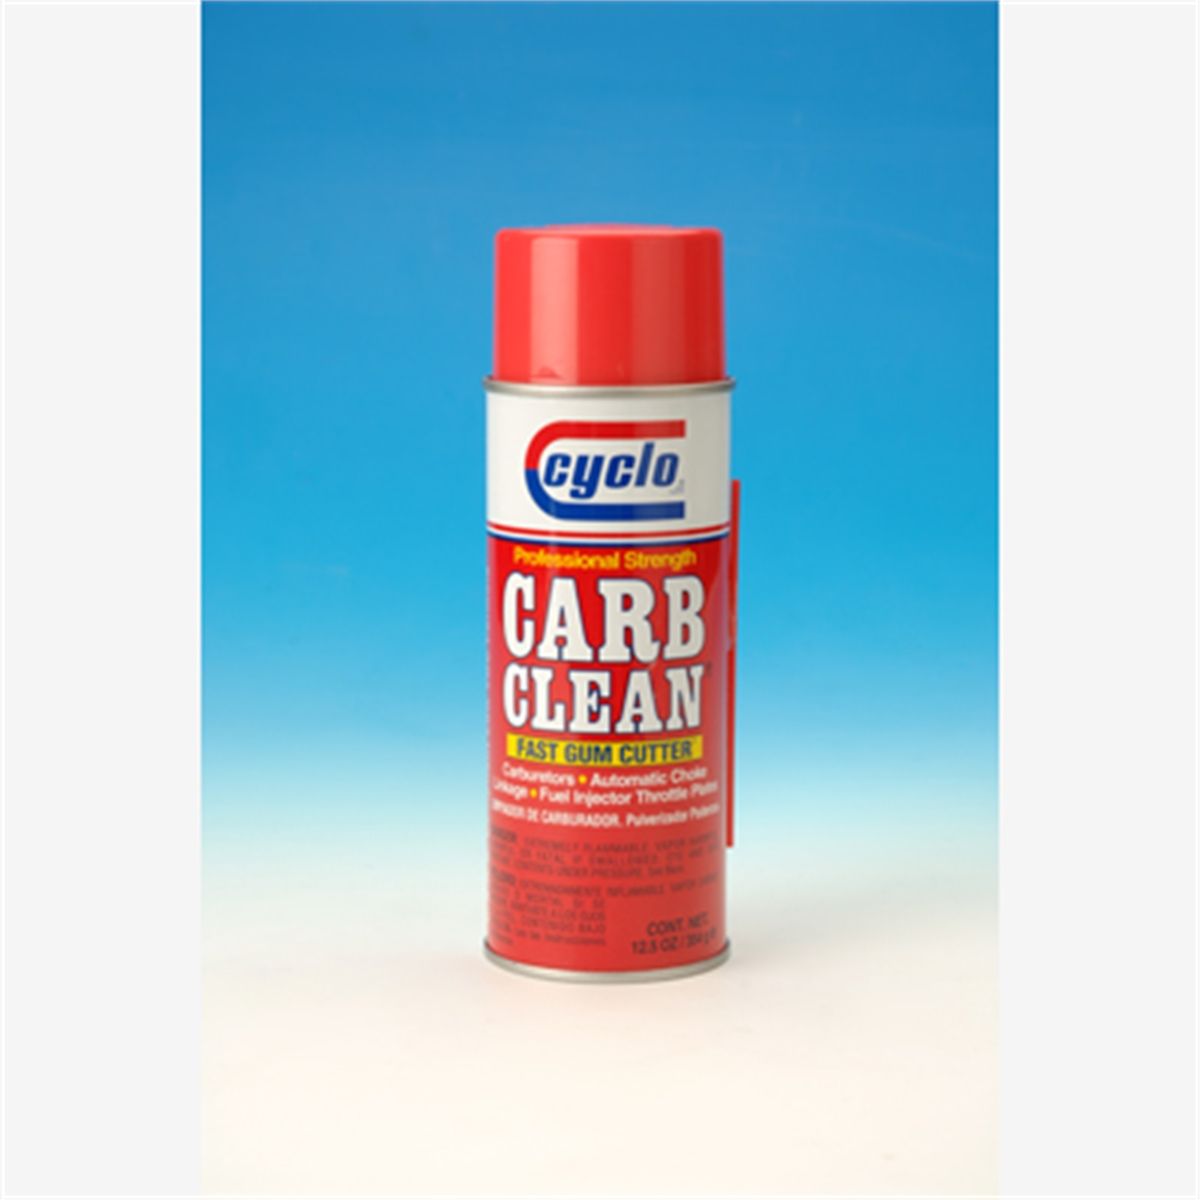 Carb clean